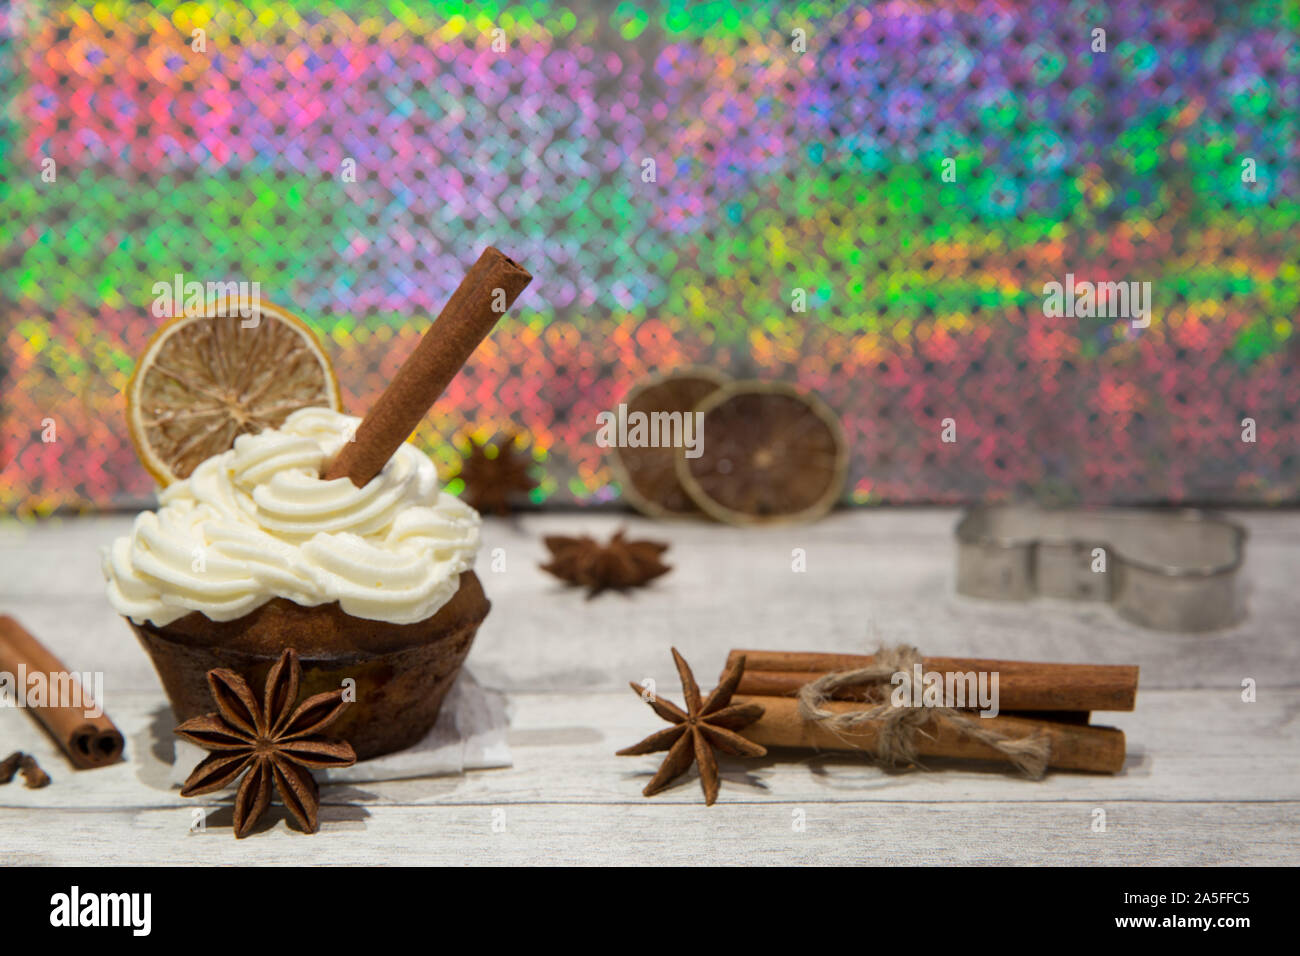 Holiday cupcake con glassa di mascarpone, essiccate di agrumi, arancio, limone e decorazione di calce, cookie cutter, cimmanon rotoli e anice stelle. Luminose colo Foto Stock